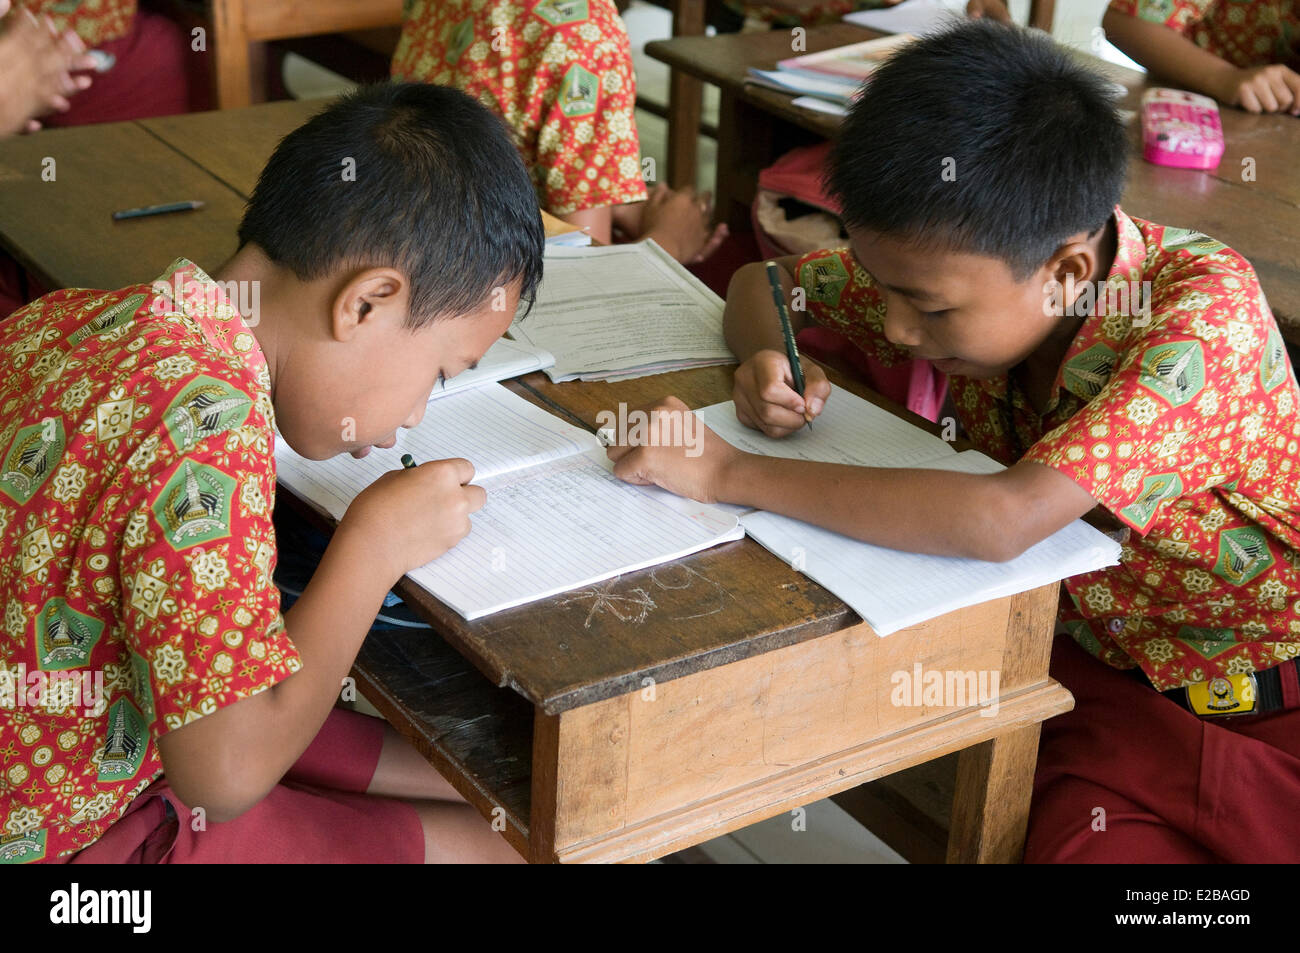 L'INDONÉSIE, Bali, Tabanan, Taman Sari Buwana Tunjuk, village traditionnel, au sein d'une école, les enfants apprennent à lire et à écrire Banque D'Images